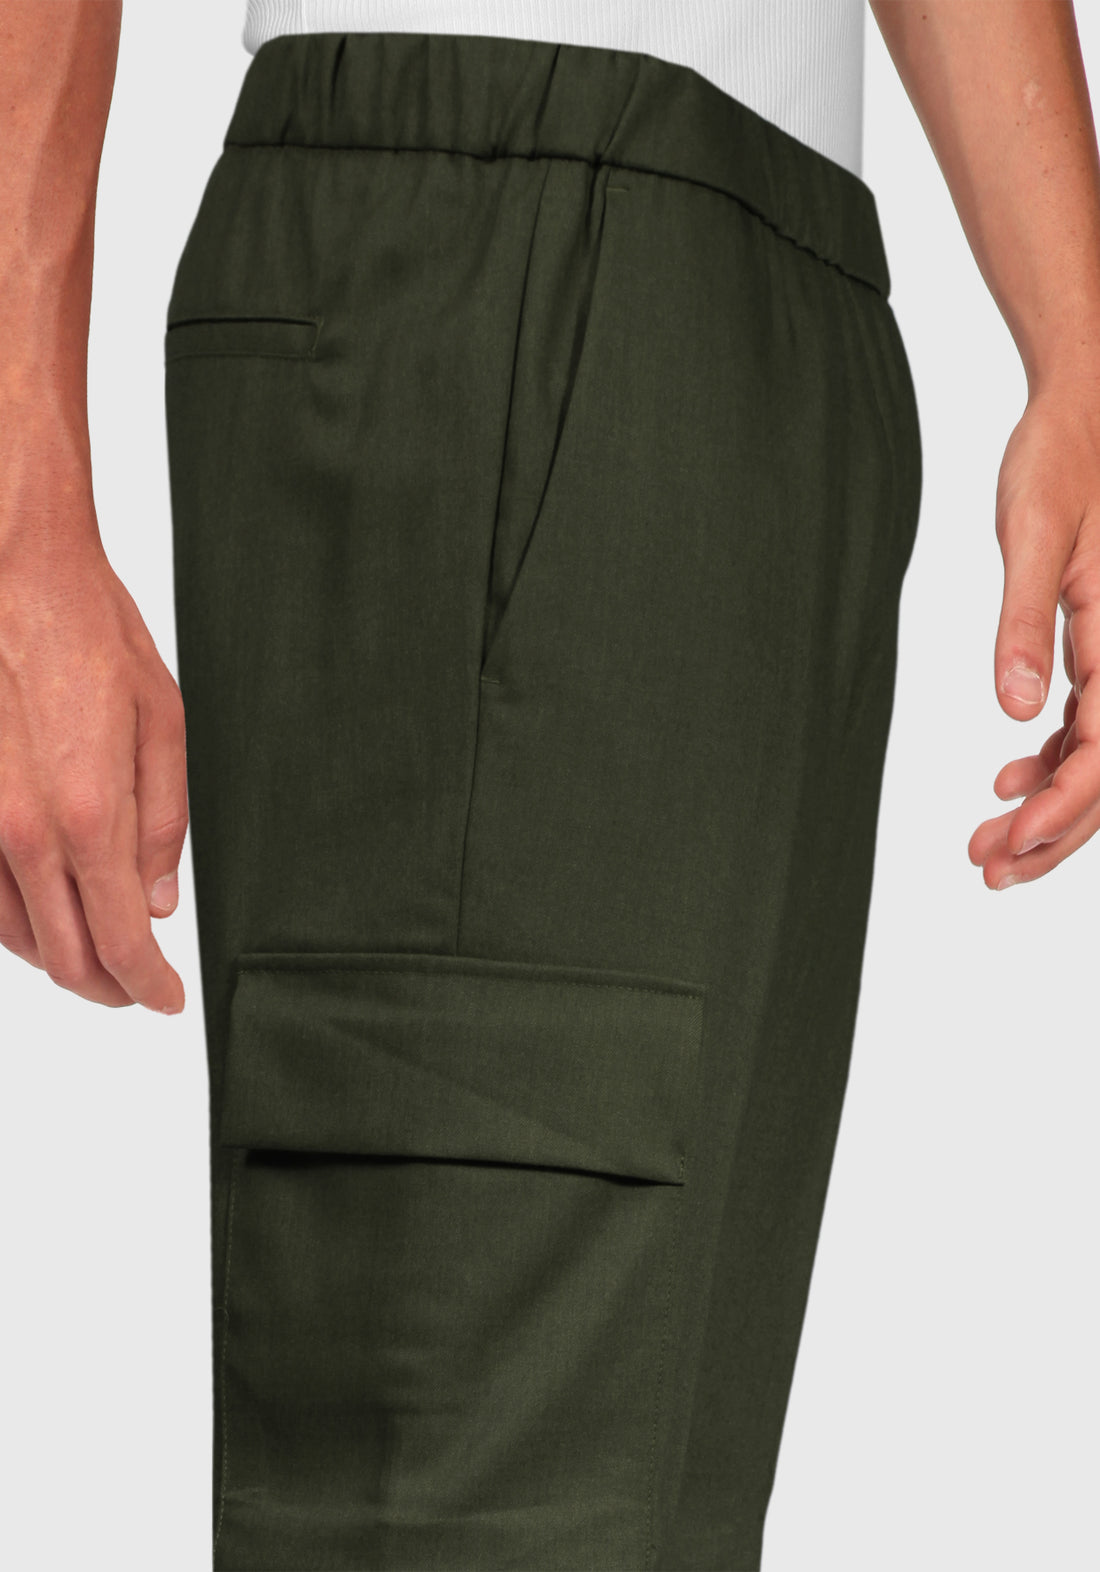 Pantalone fresco Lana con Tascone laterali - Militare